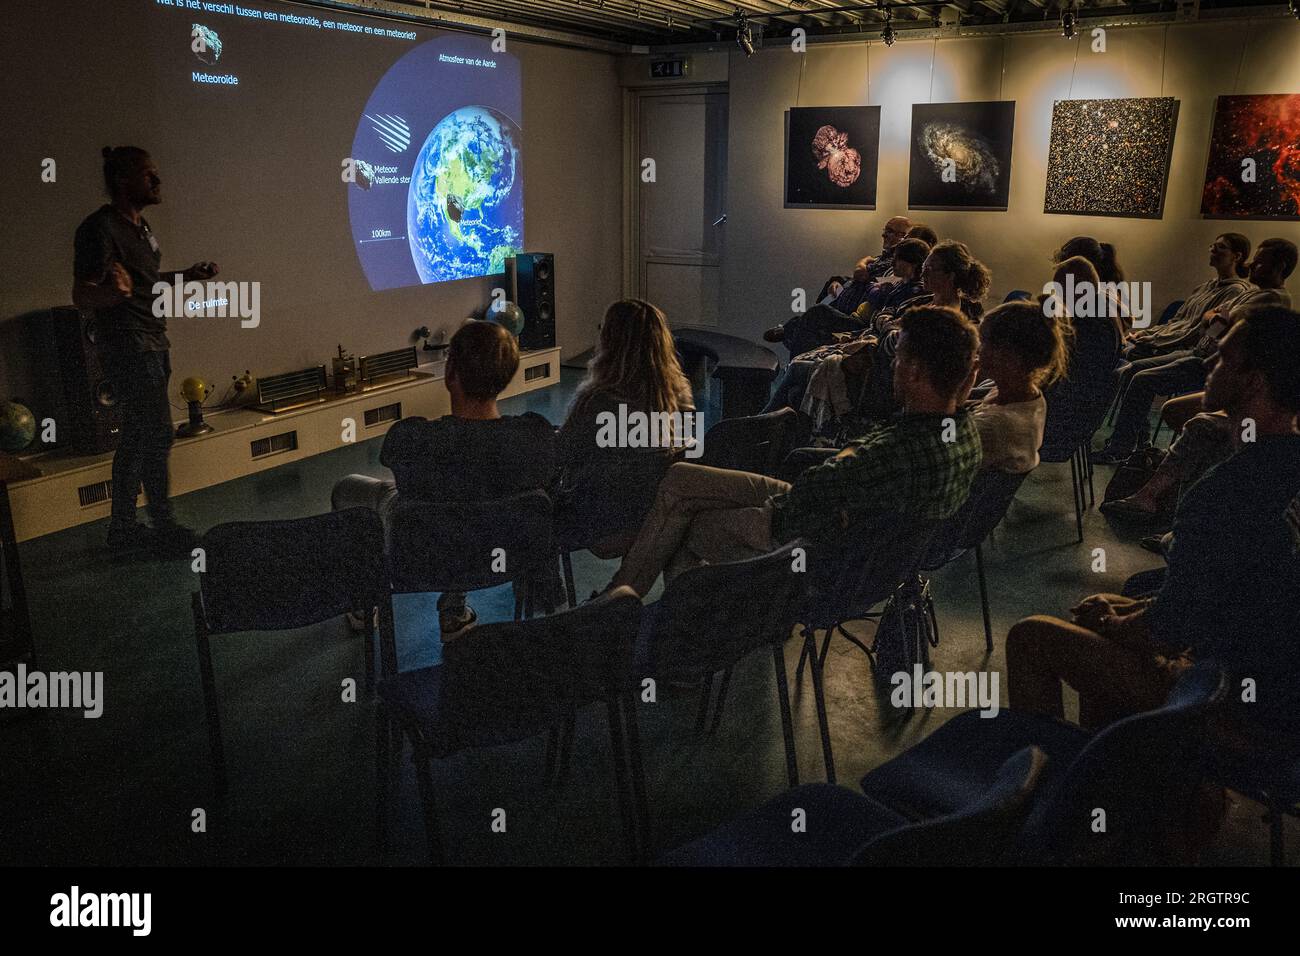 LATTROP - Interessierte sehen sich eine Präsentation über Sternschnuppen auf dem Cosmos-Observatorium in Lattrop, Twente, zum Meteoritenschauer an. Für zwei Nächte können die Sternschnuppen bewundert werden, da es dieses Jahr kein Mondlicht gibt. ANP VINCENT JANNINK netherlands Out - belgium Out Credit: ANP/Alamy Live News Stockfoto